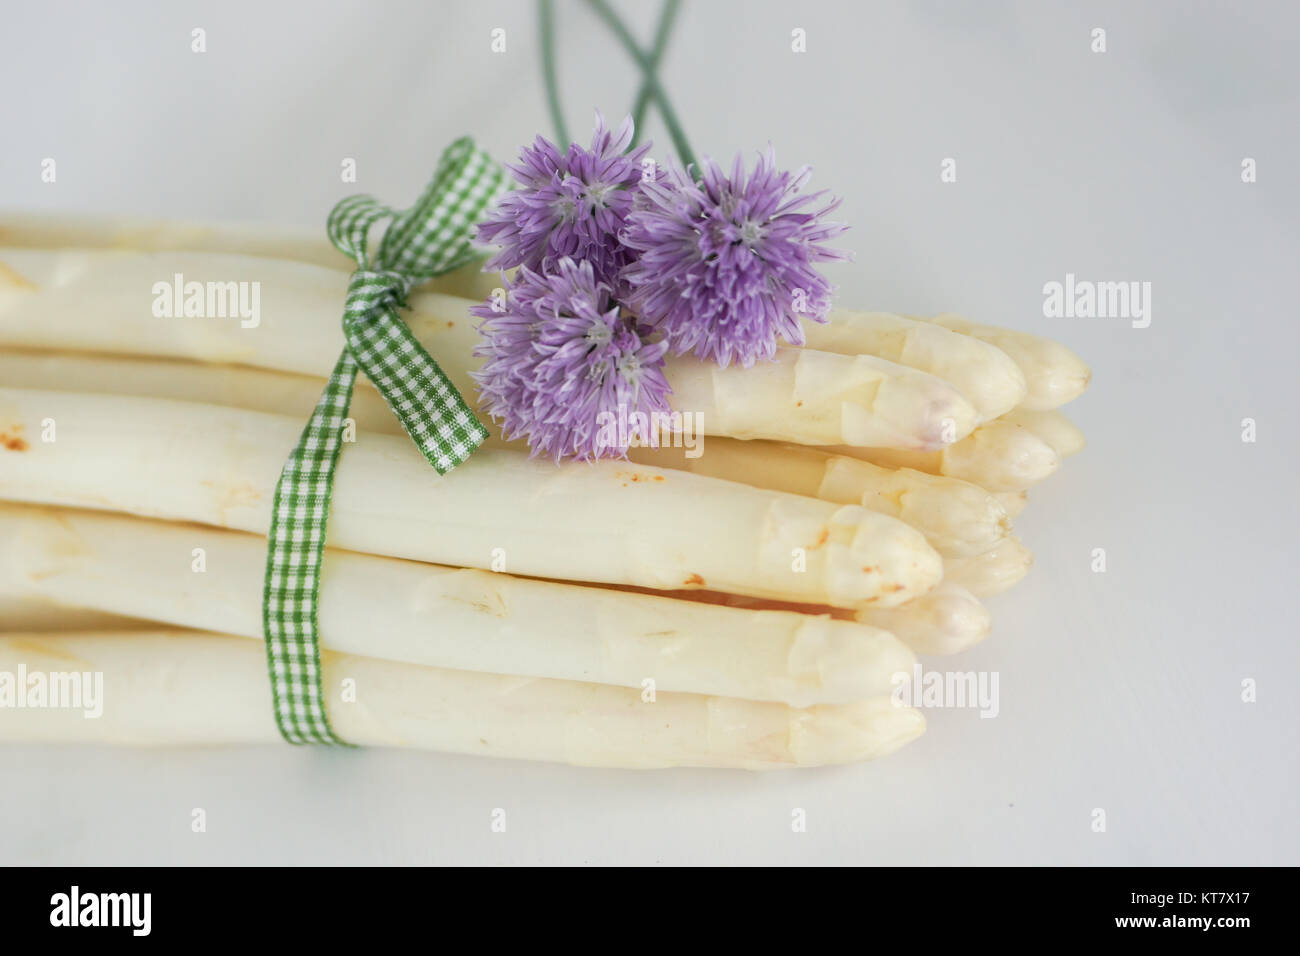 espárragos bellamente decorados con cebollino, flores y cinta con batatas Foto de stock